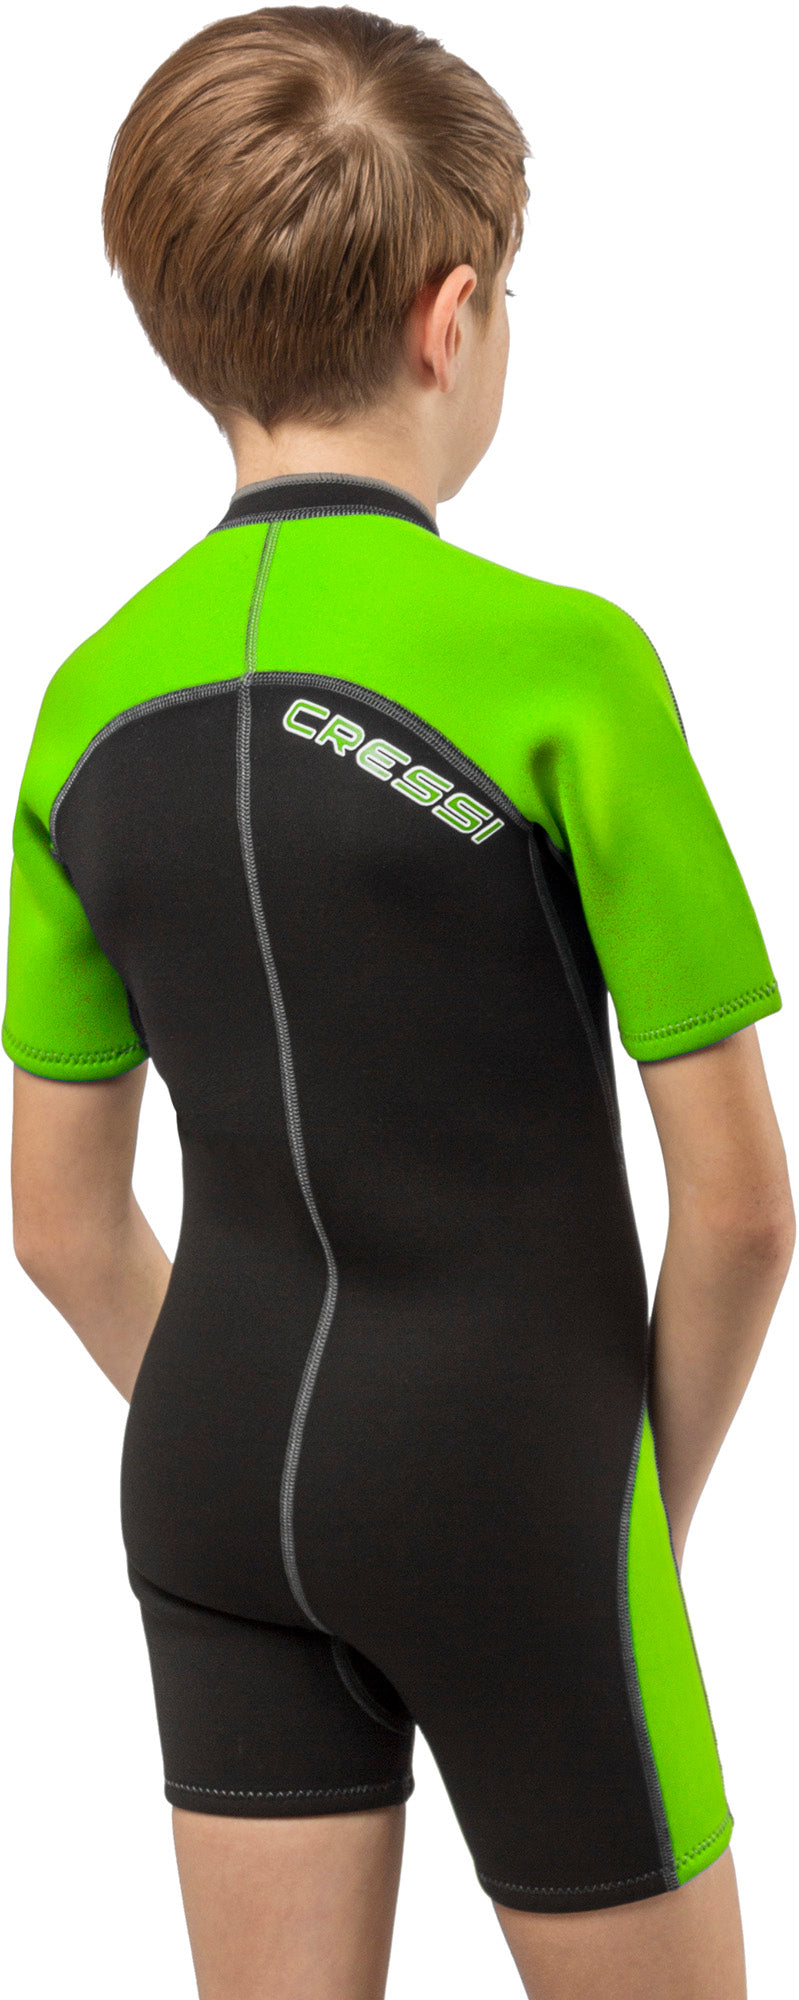 Cressi Short Kids, Boys Front-Zip Neoprene Wetsuit for All Water Sports | Lido Junior